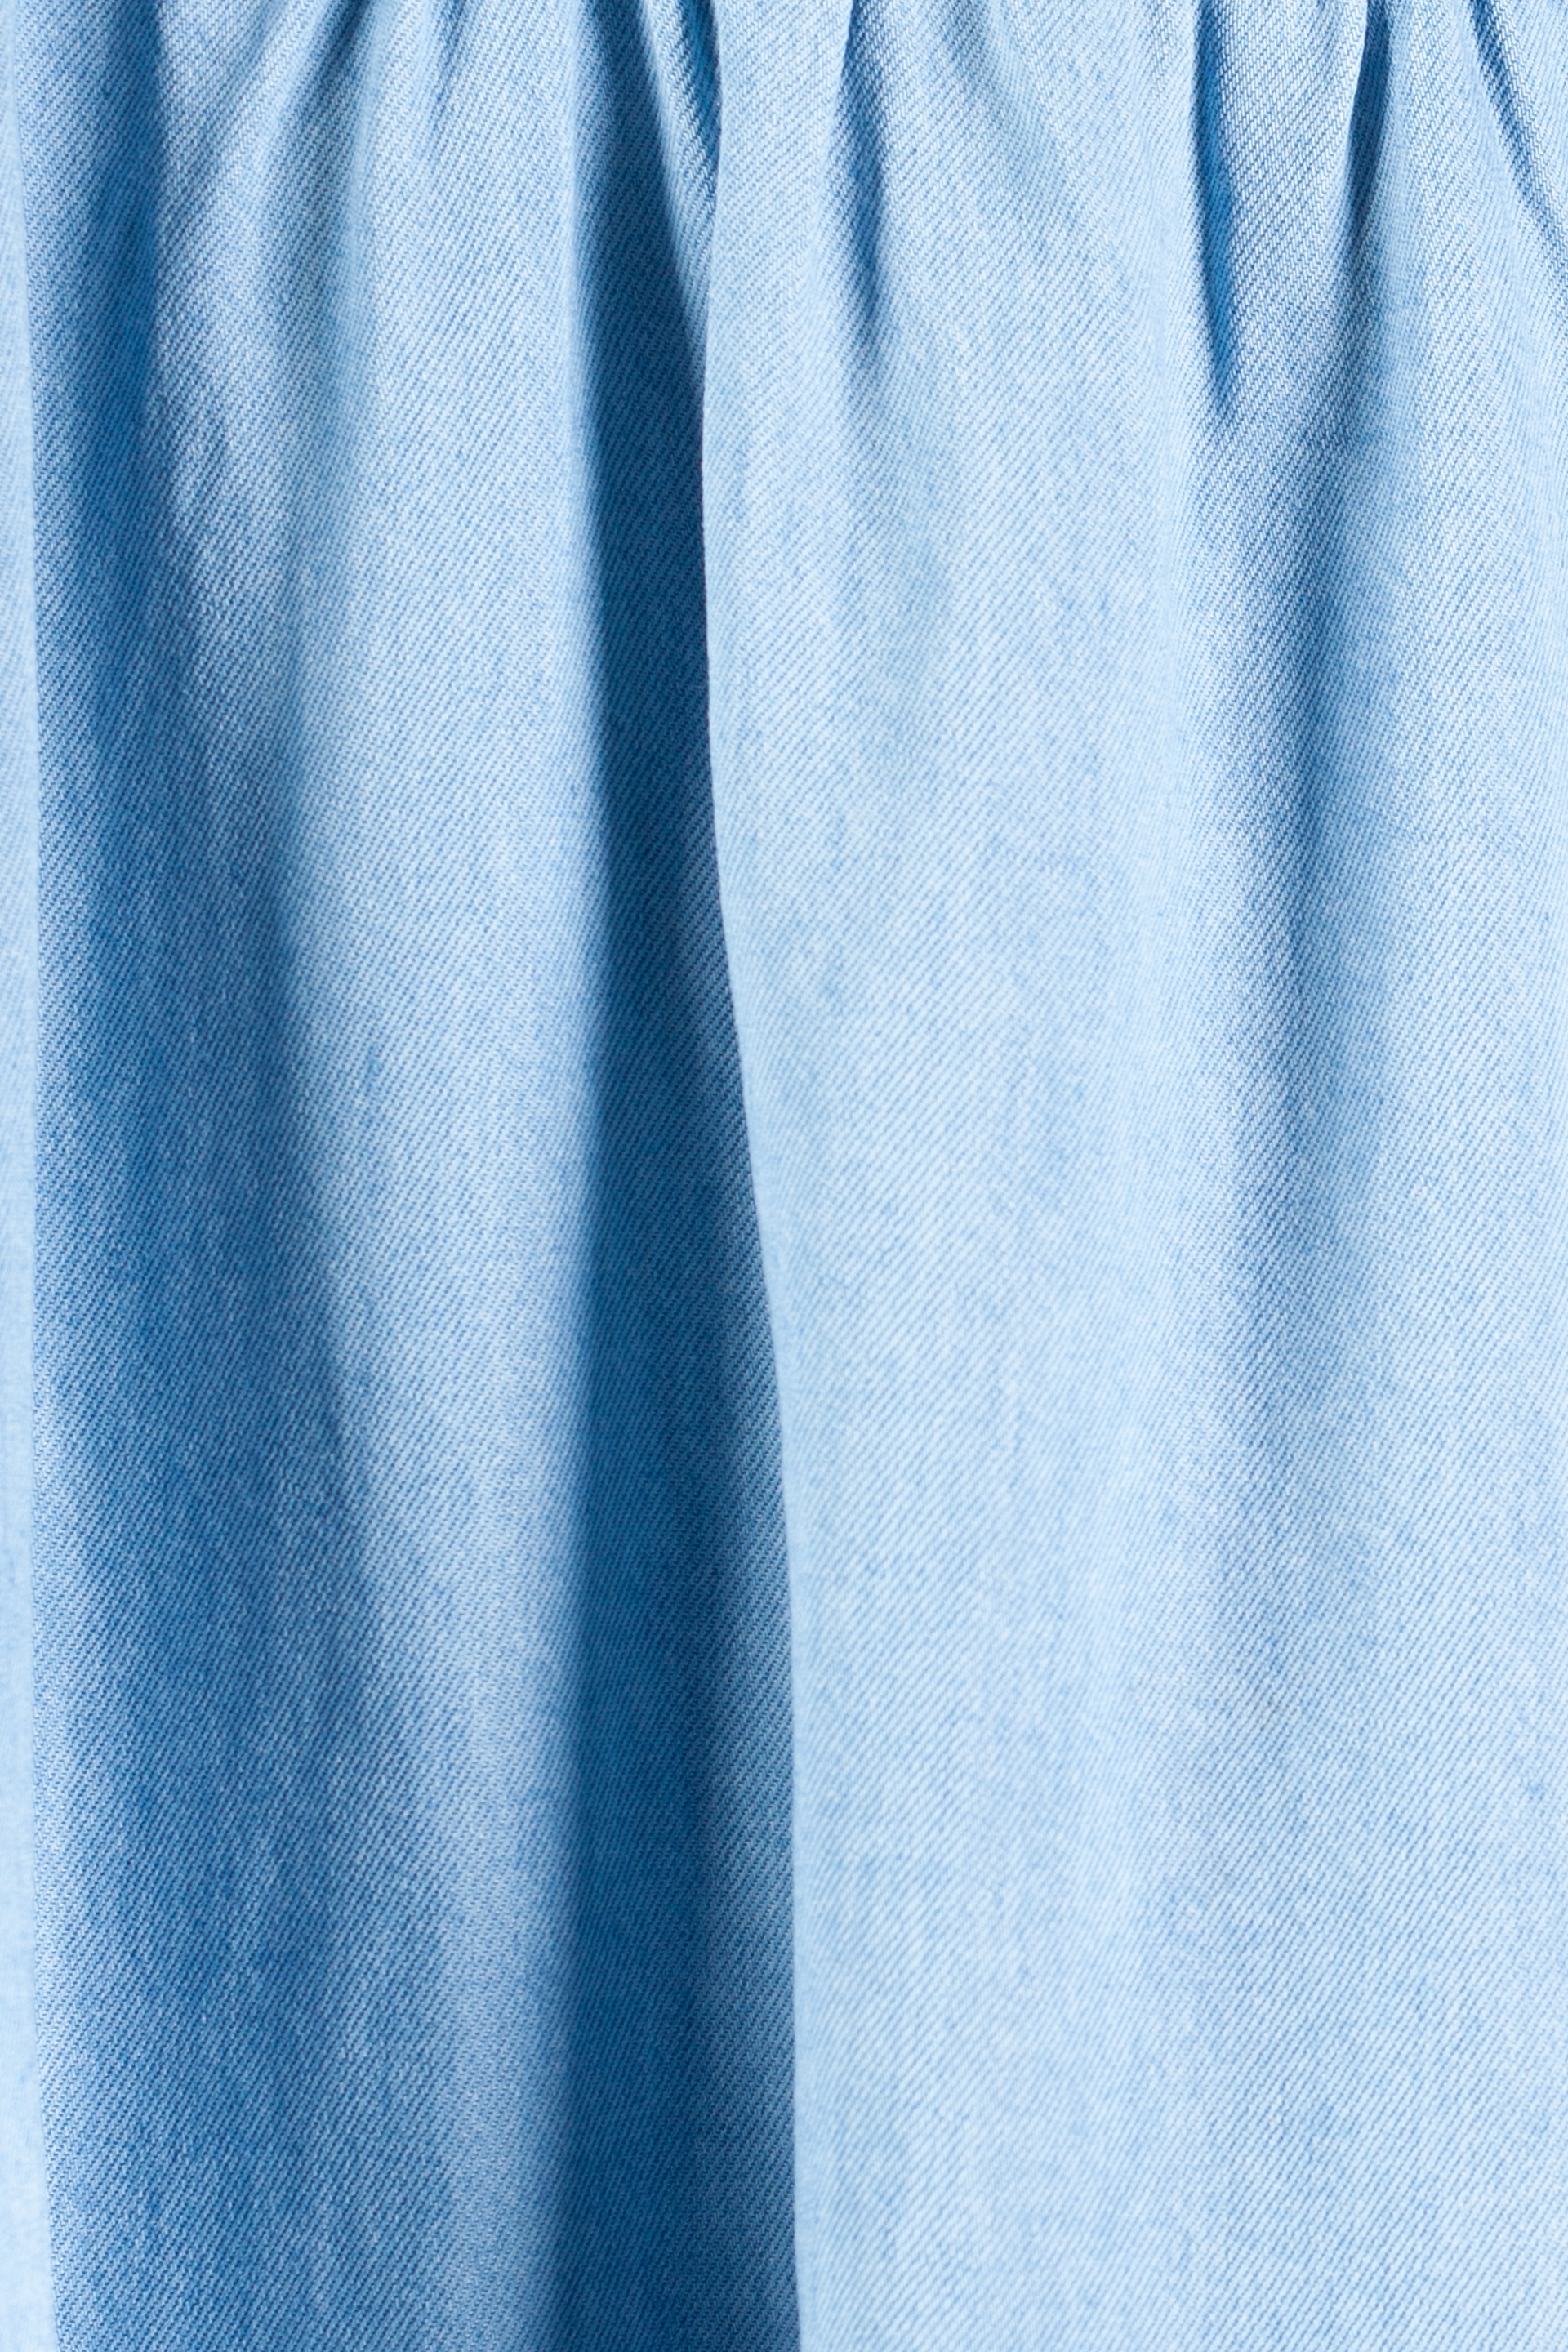 Jeanskleid BLUE SEVEN 184160-500